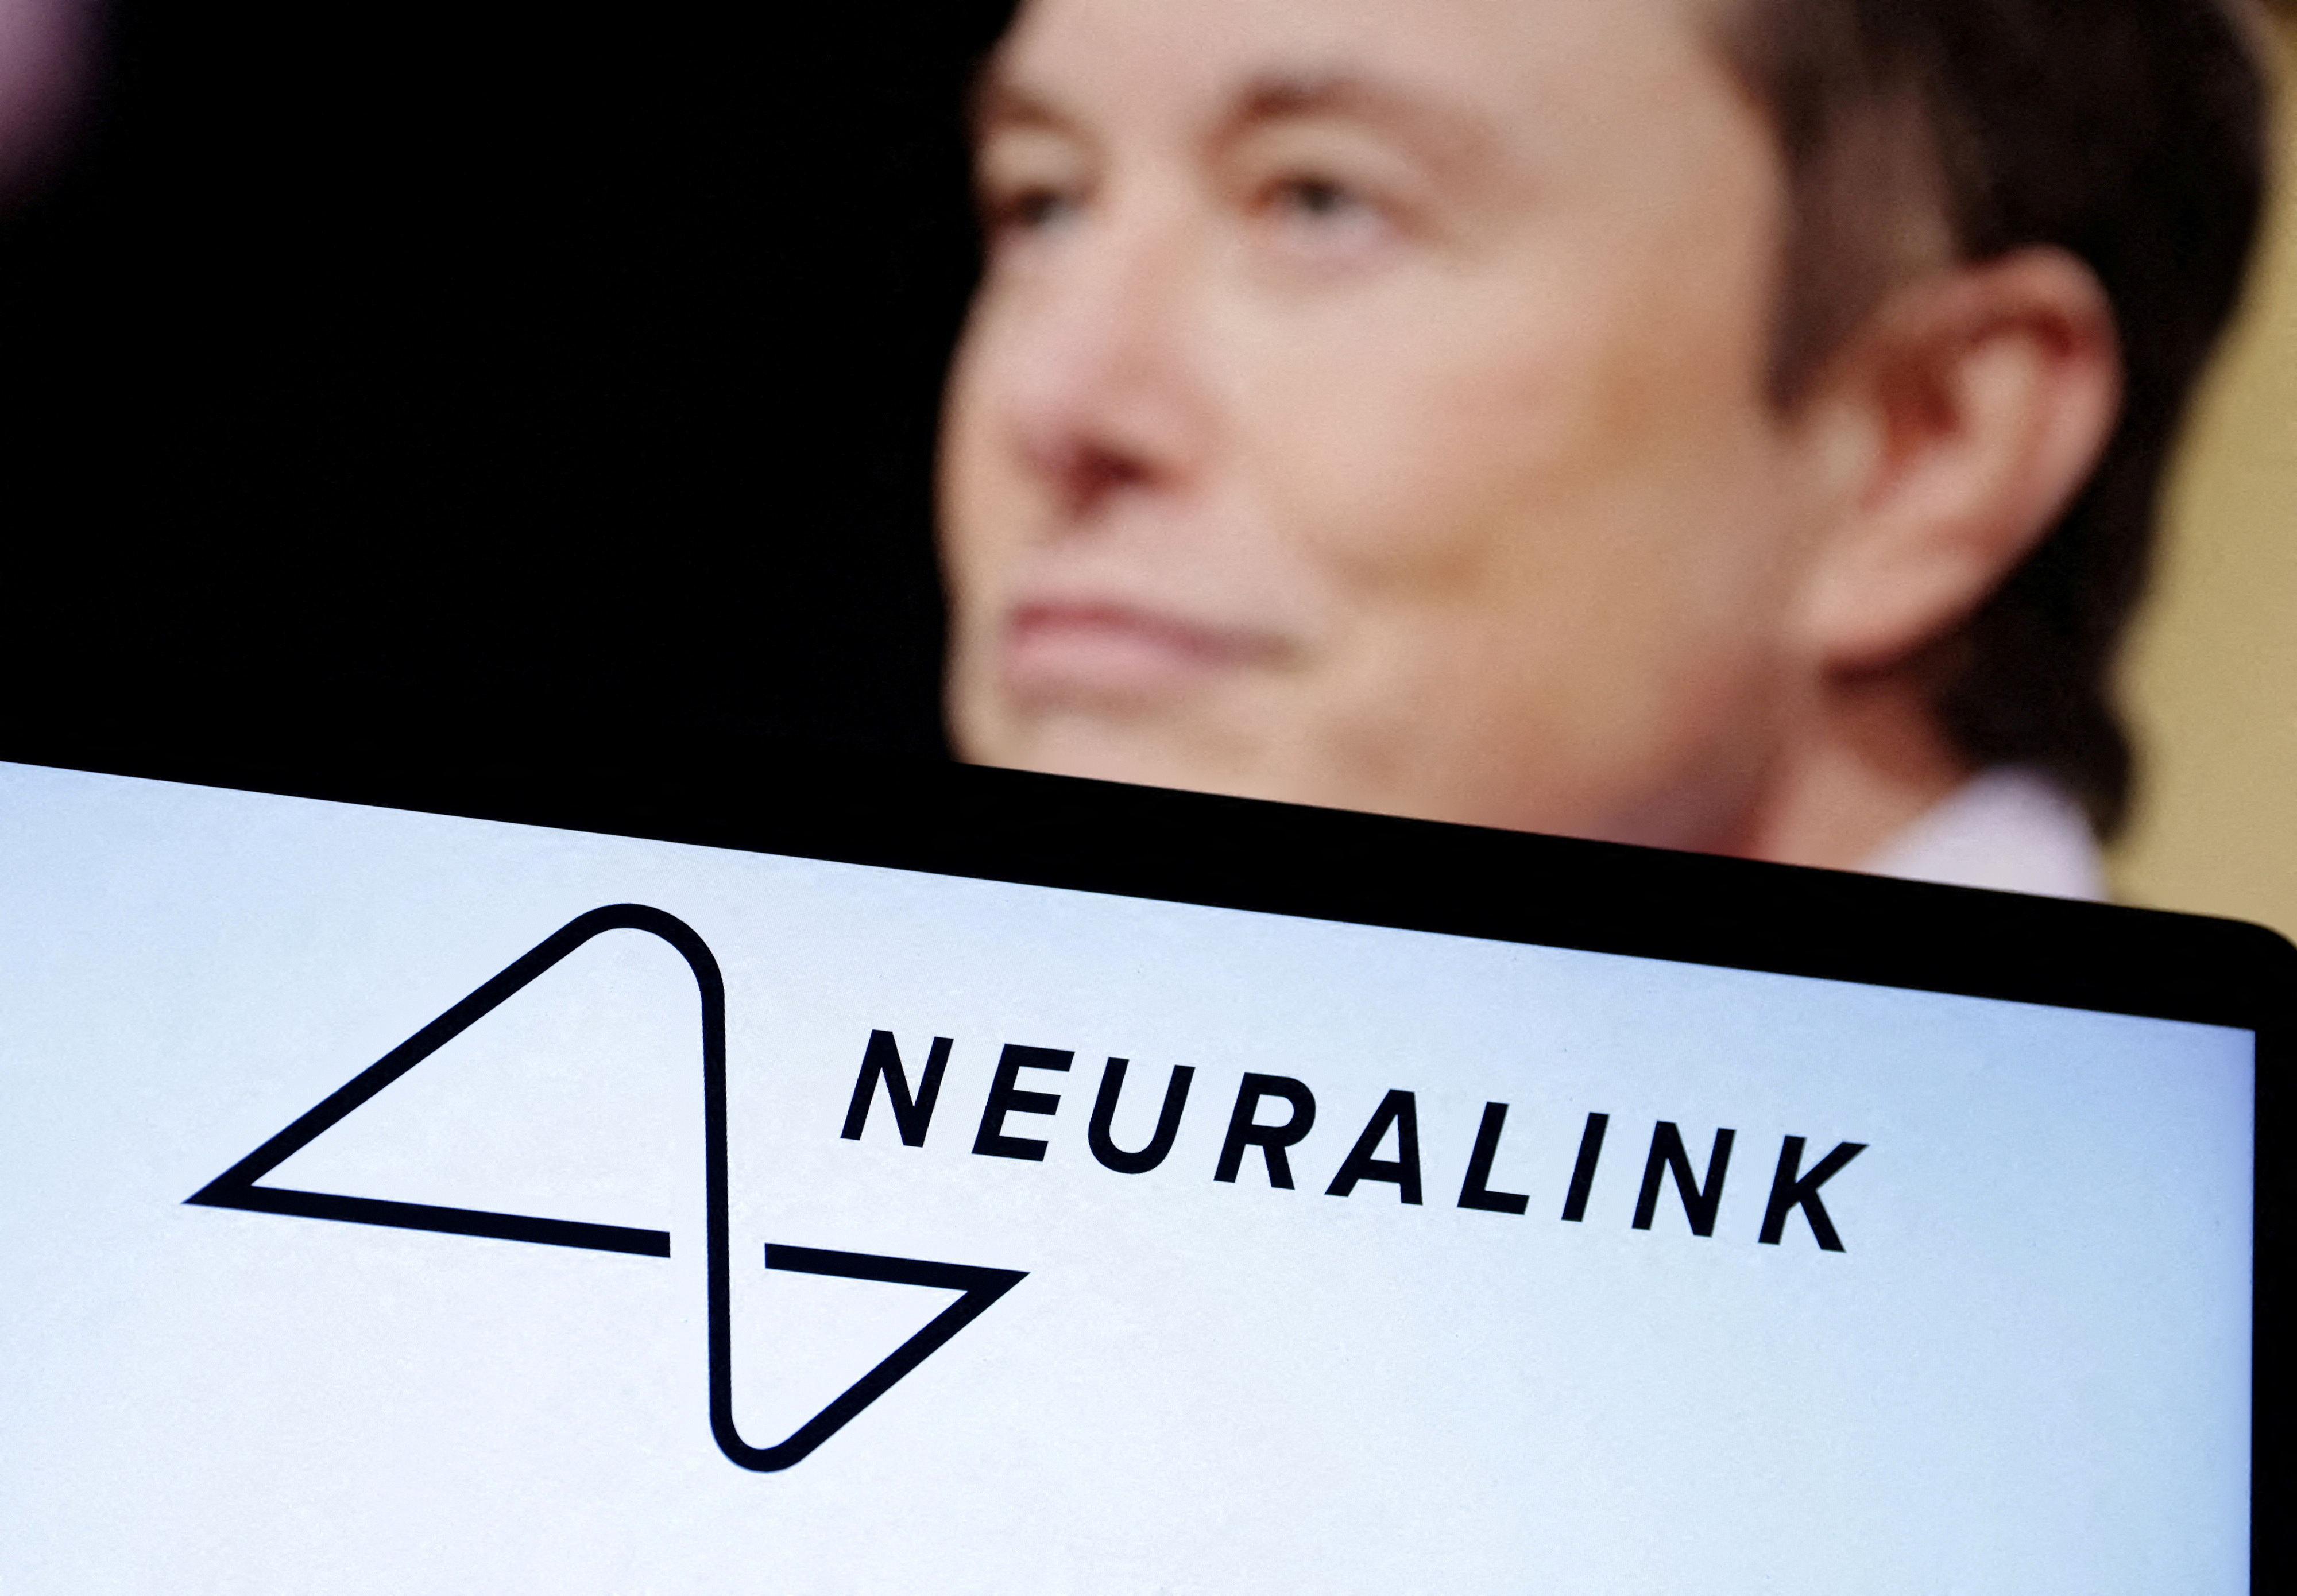 Neuralink : le fantasme d'Elon Musk pour nous implanter des puces dans le cerveau